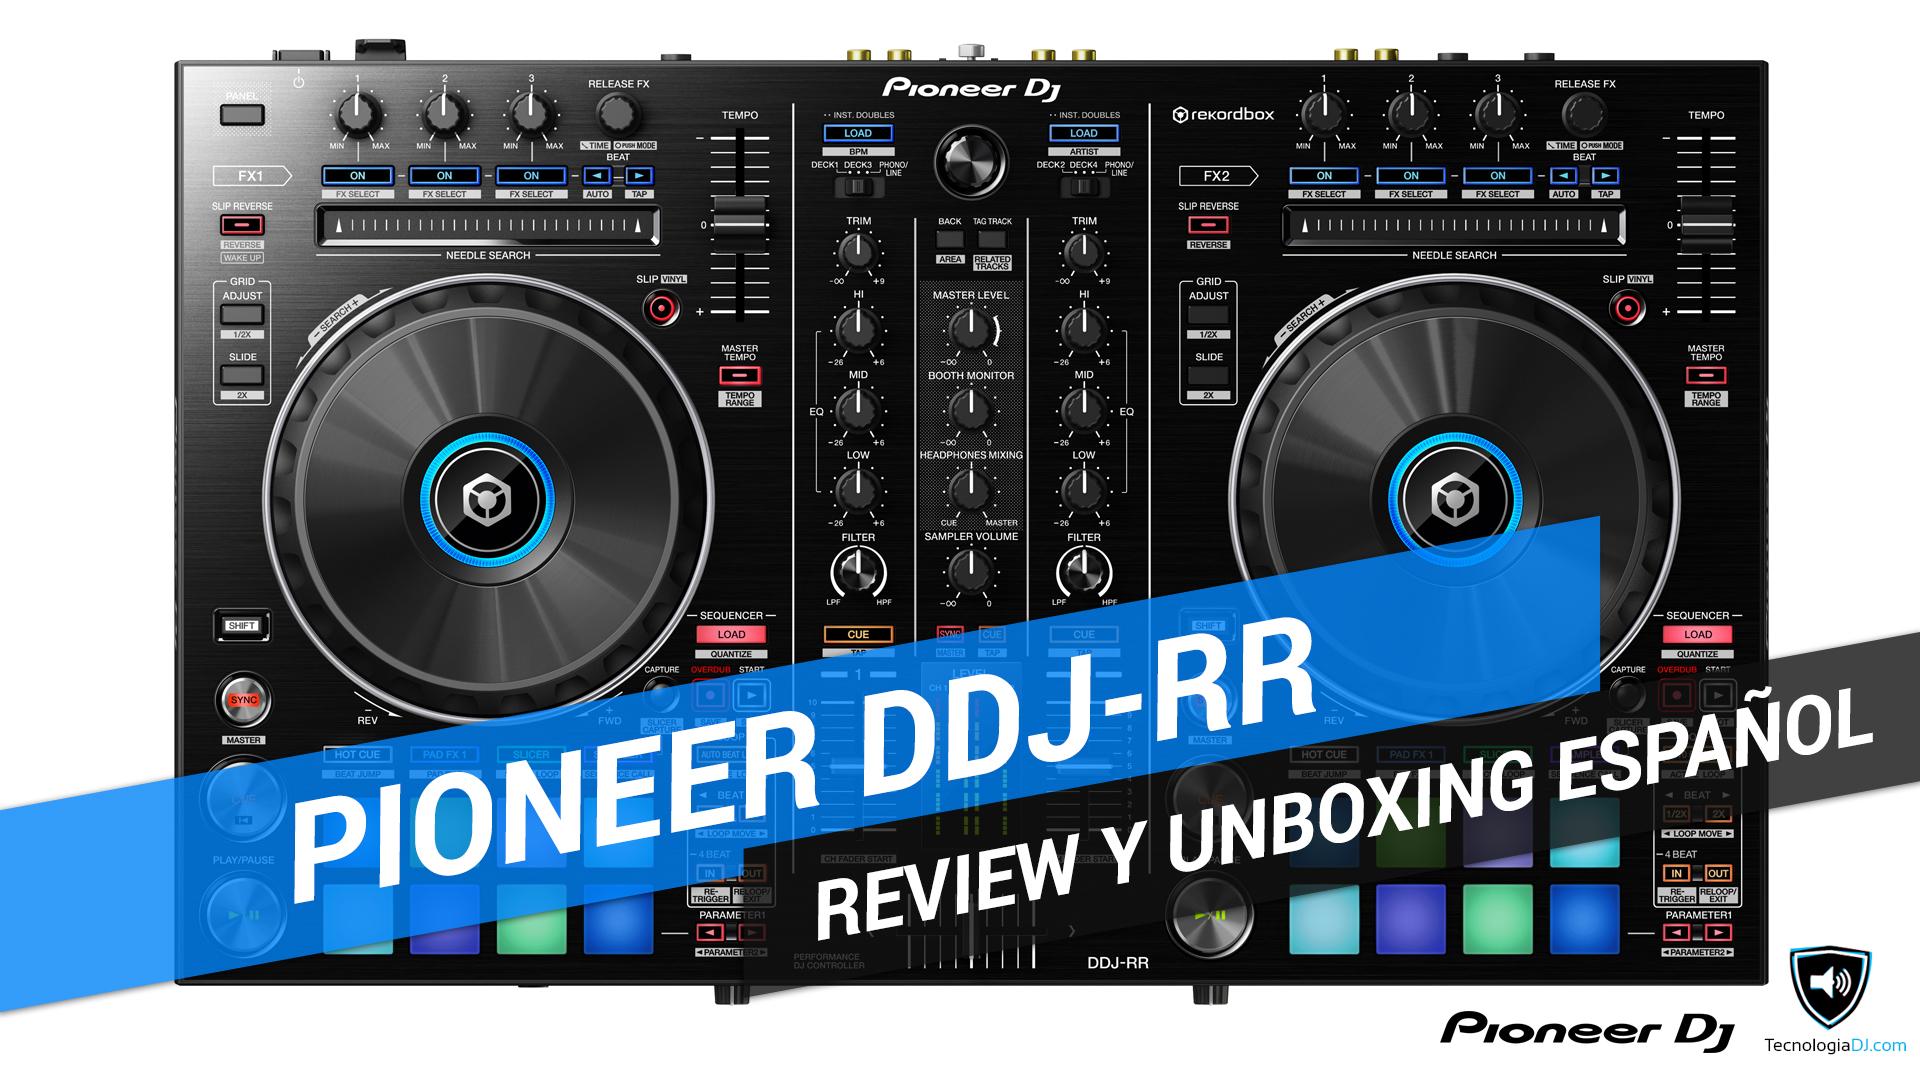 Review y unboxing en español controlador Pioneer DDJ-RR